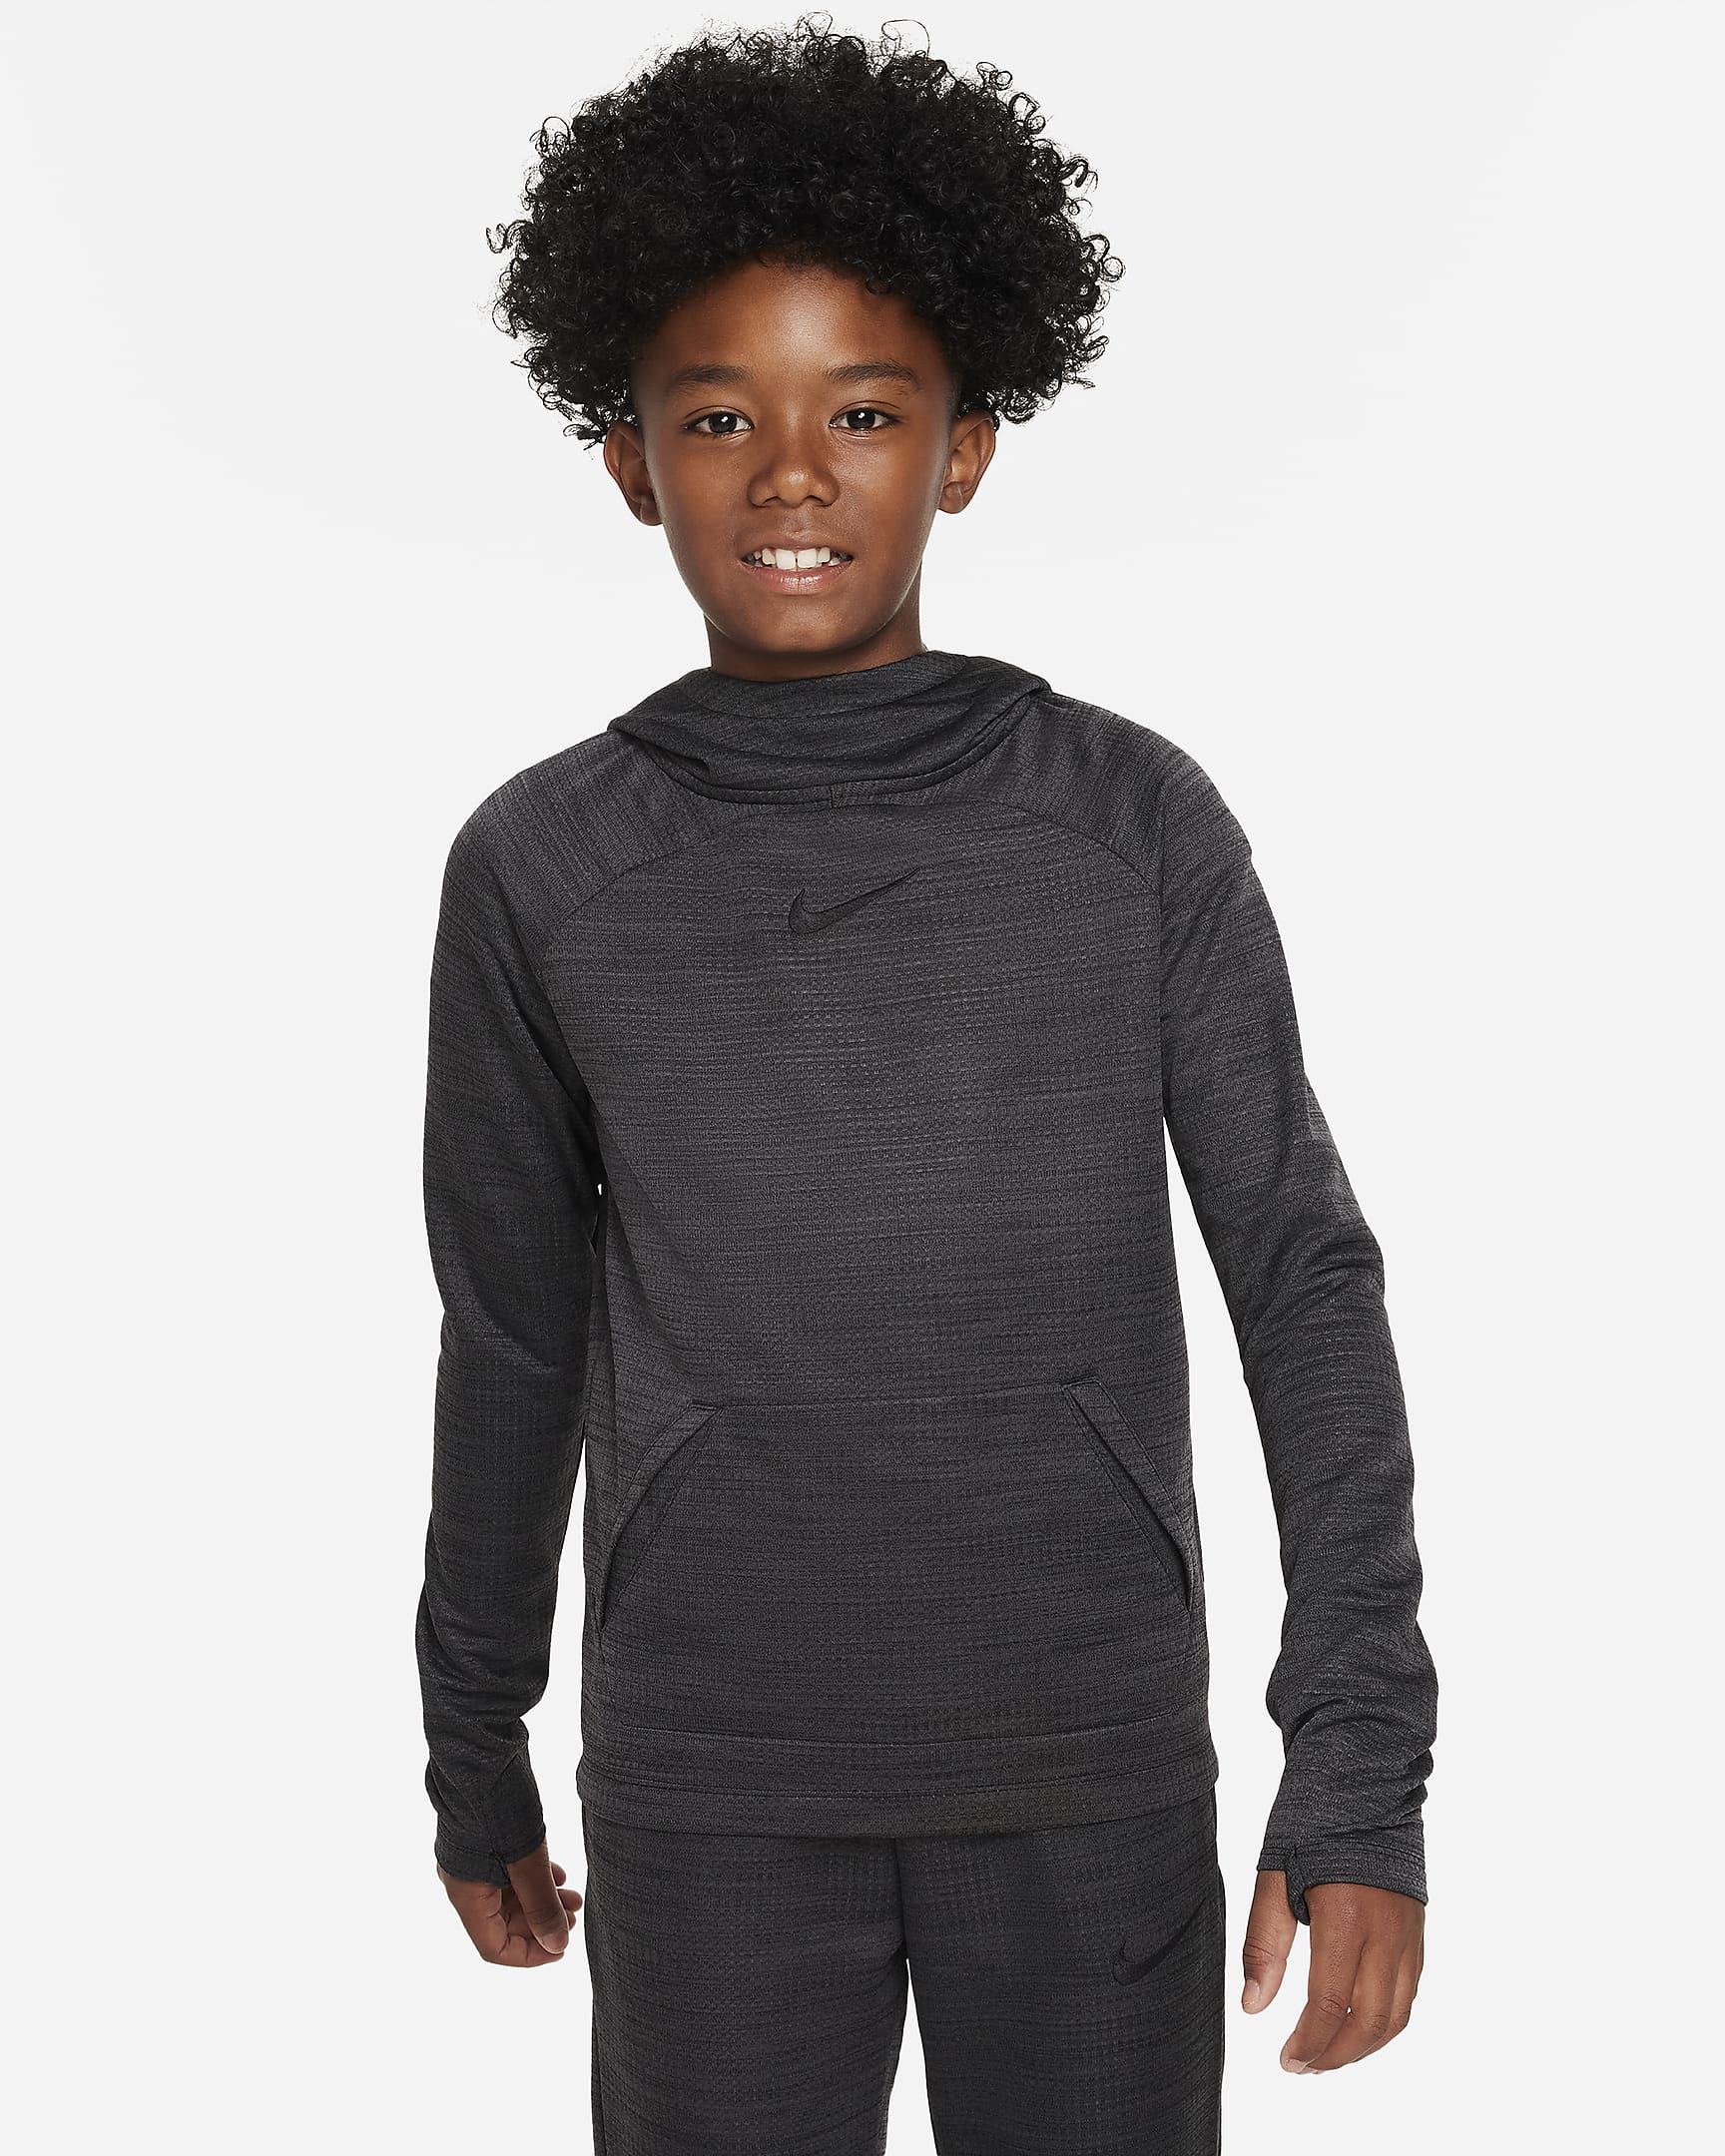 Nike Dri-FIT Academy Older Kids' Pullover Football Hoodie - Black/Black